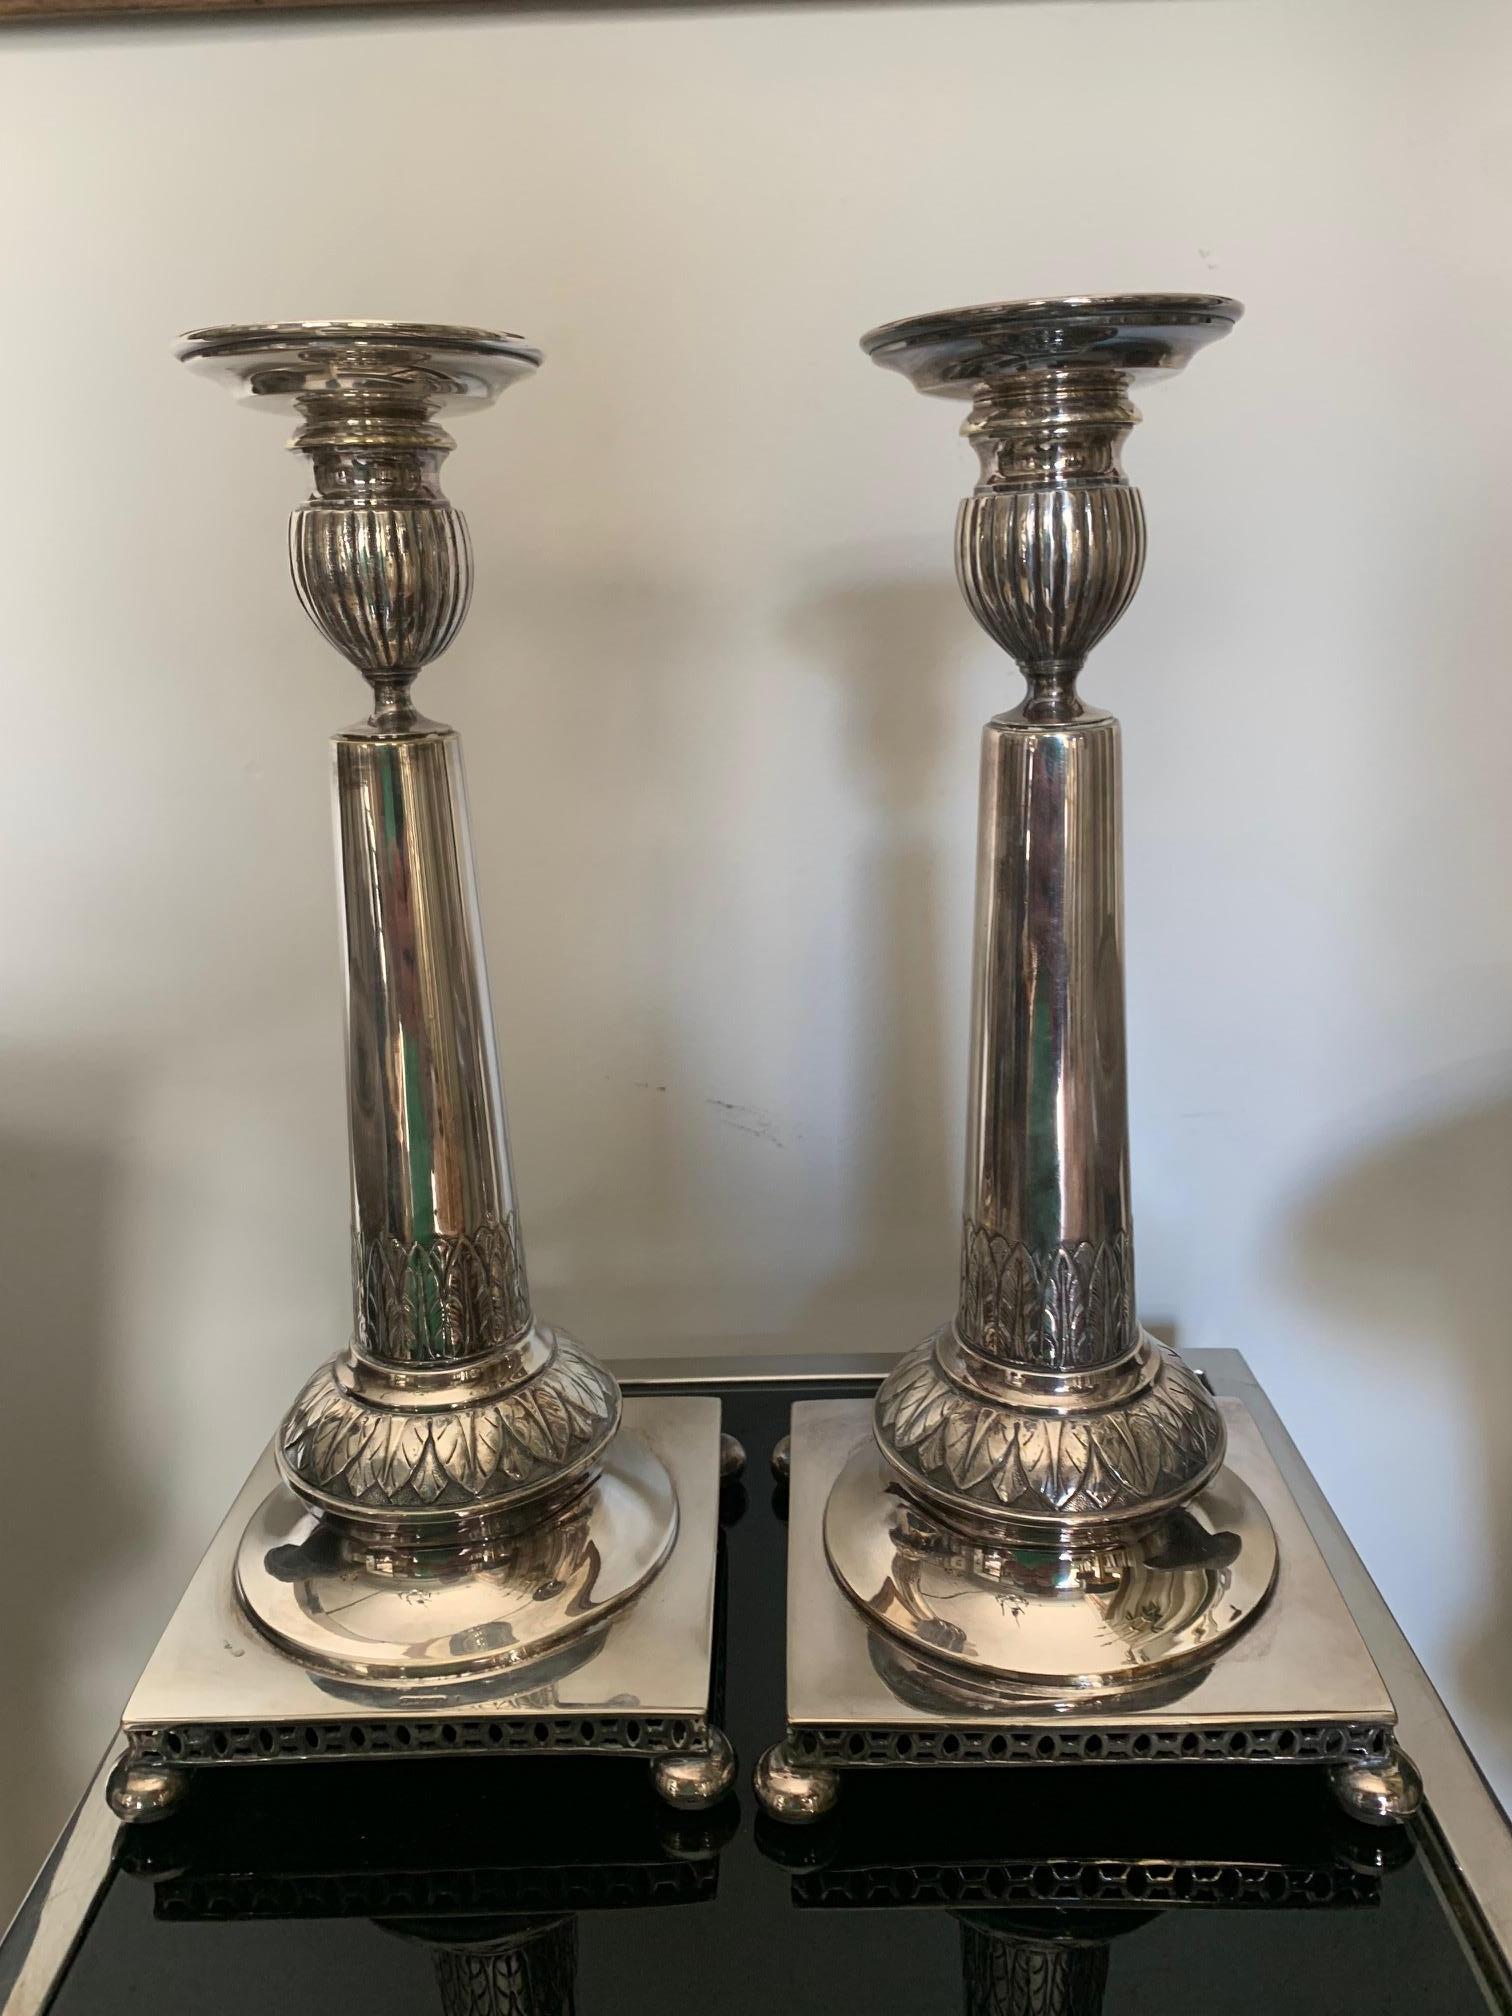 Paar Kerzenhalter aus neoklassizistischem Silber, verziert mit Blättern, quadratischer Sockel durchbrochen, Anfang XX. Der Zustand ist gut, obwohl einer von ihnen einen kleinen Fleck auf dem Sockel hat.